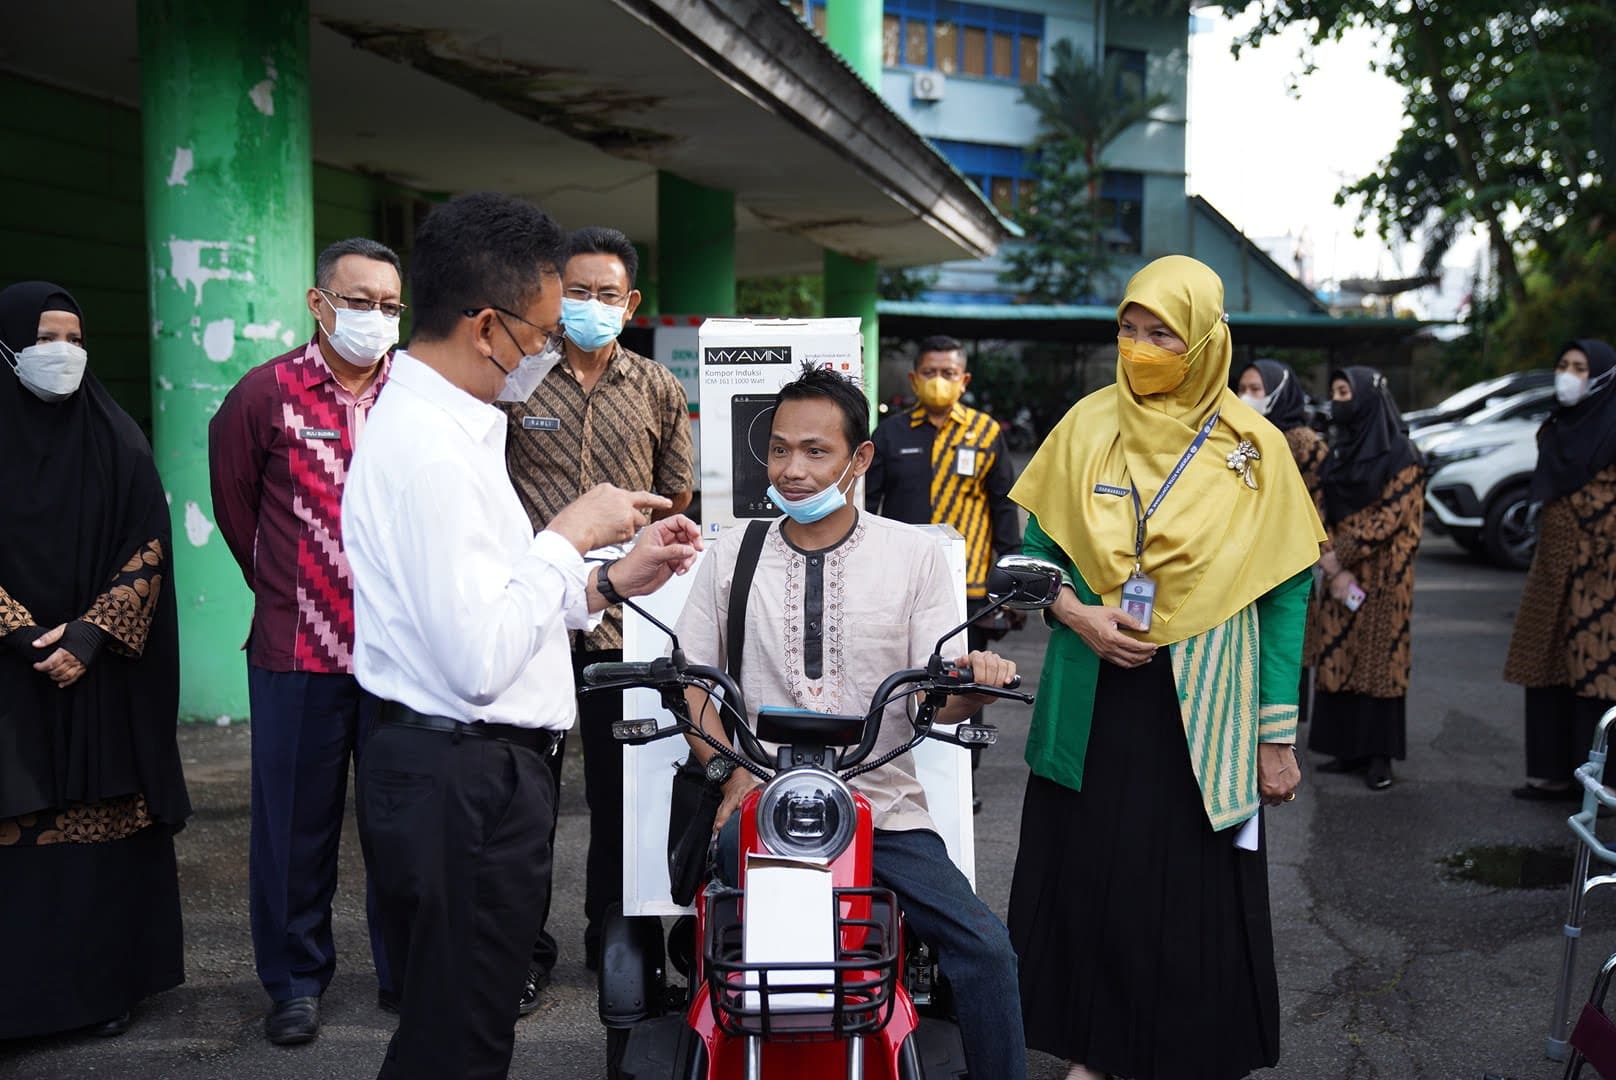 Wali Kota Pontianak, Edi Rusdi Kamtono menyerahkan sepeda listrik yang dilengkapi etalase mini kepada warga penyandang disabilitas untuk berjualan makanan ringan beberapa waktu silam. (Foto: Prokopim For KalbarOnline.com)